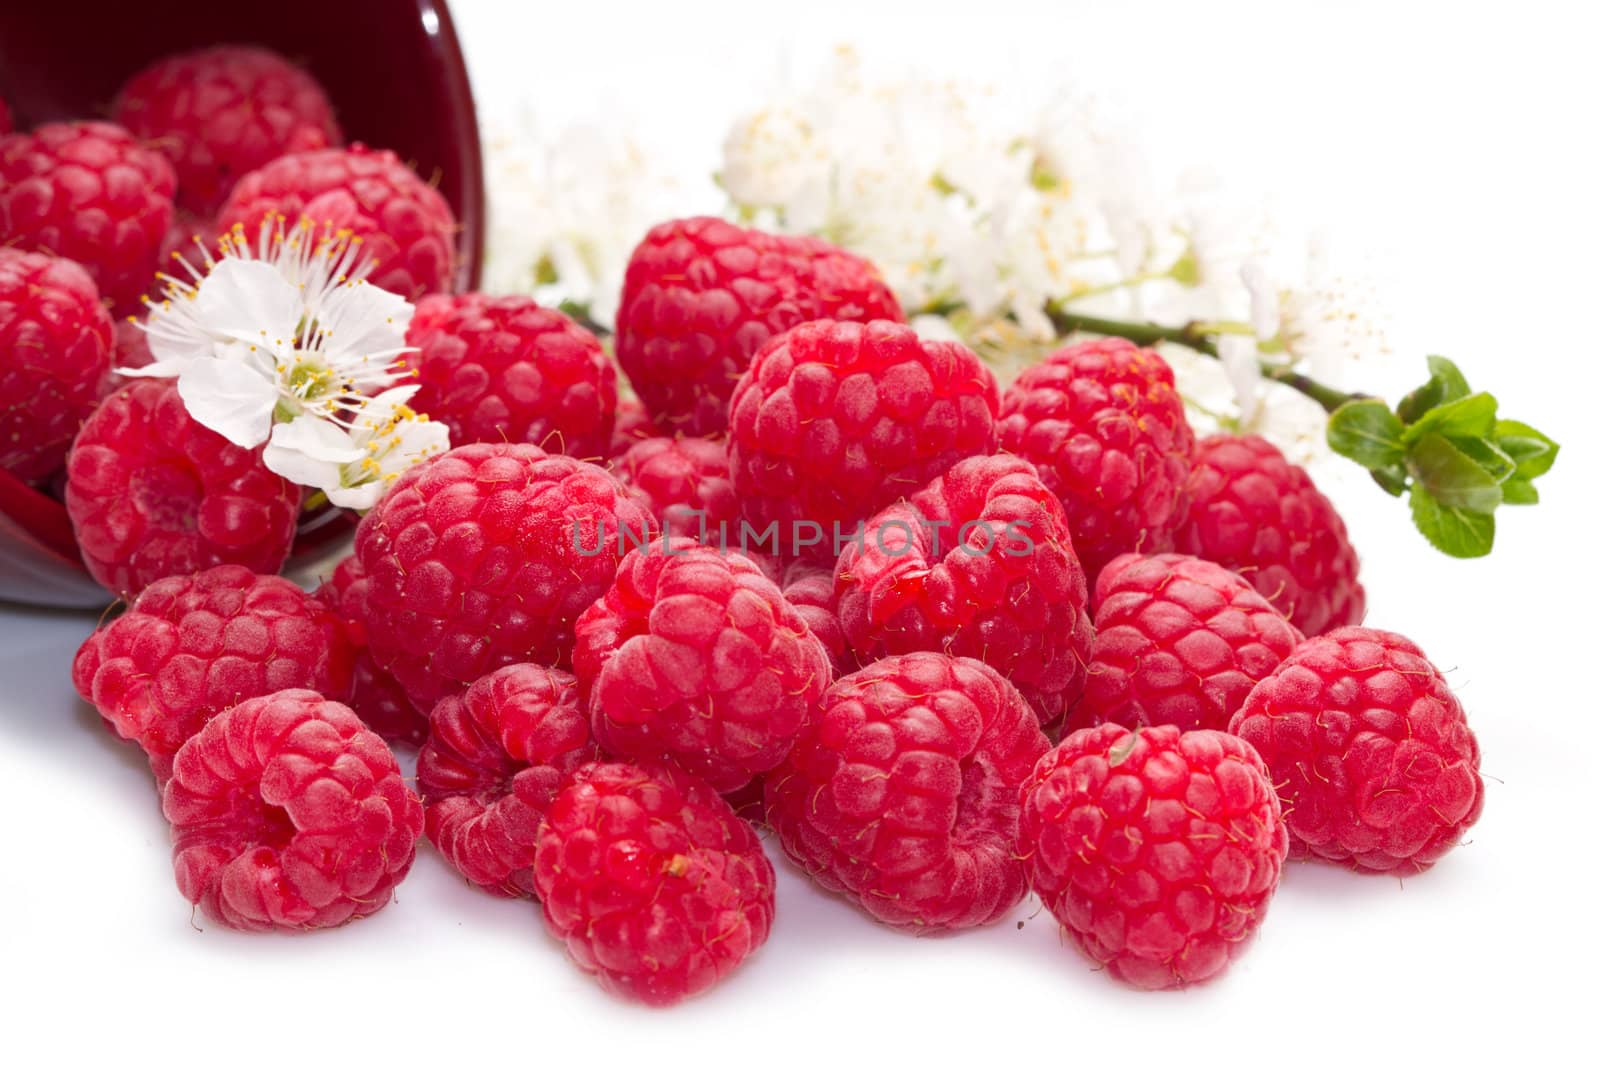 fresh raspberries scattered on white background 